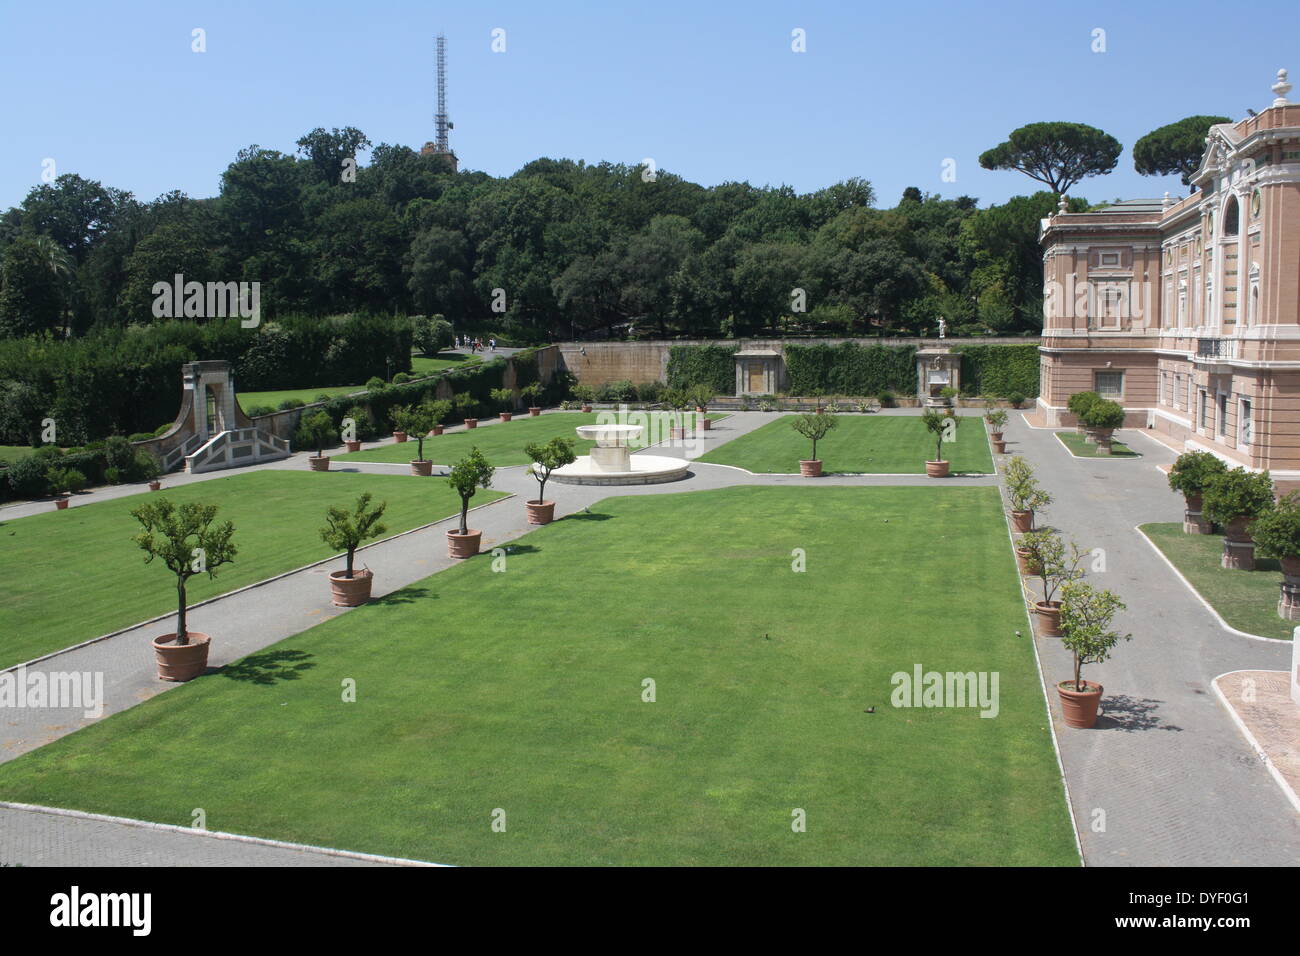 Detail aus der Vatikanischen Gärten, die großen weitläufigen städtischen Gärten, die mehr als die Hälfte der Vatikan Gebiet (rund 23 Hektar). Die Gärten sind mit Skulpturen, Reliefs und Springbrunnen dekoriert. Dieses Bild zeigt den Garten Design Features. Stockfoto